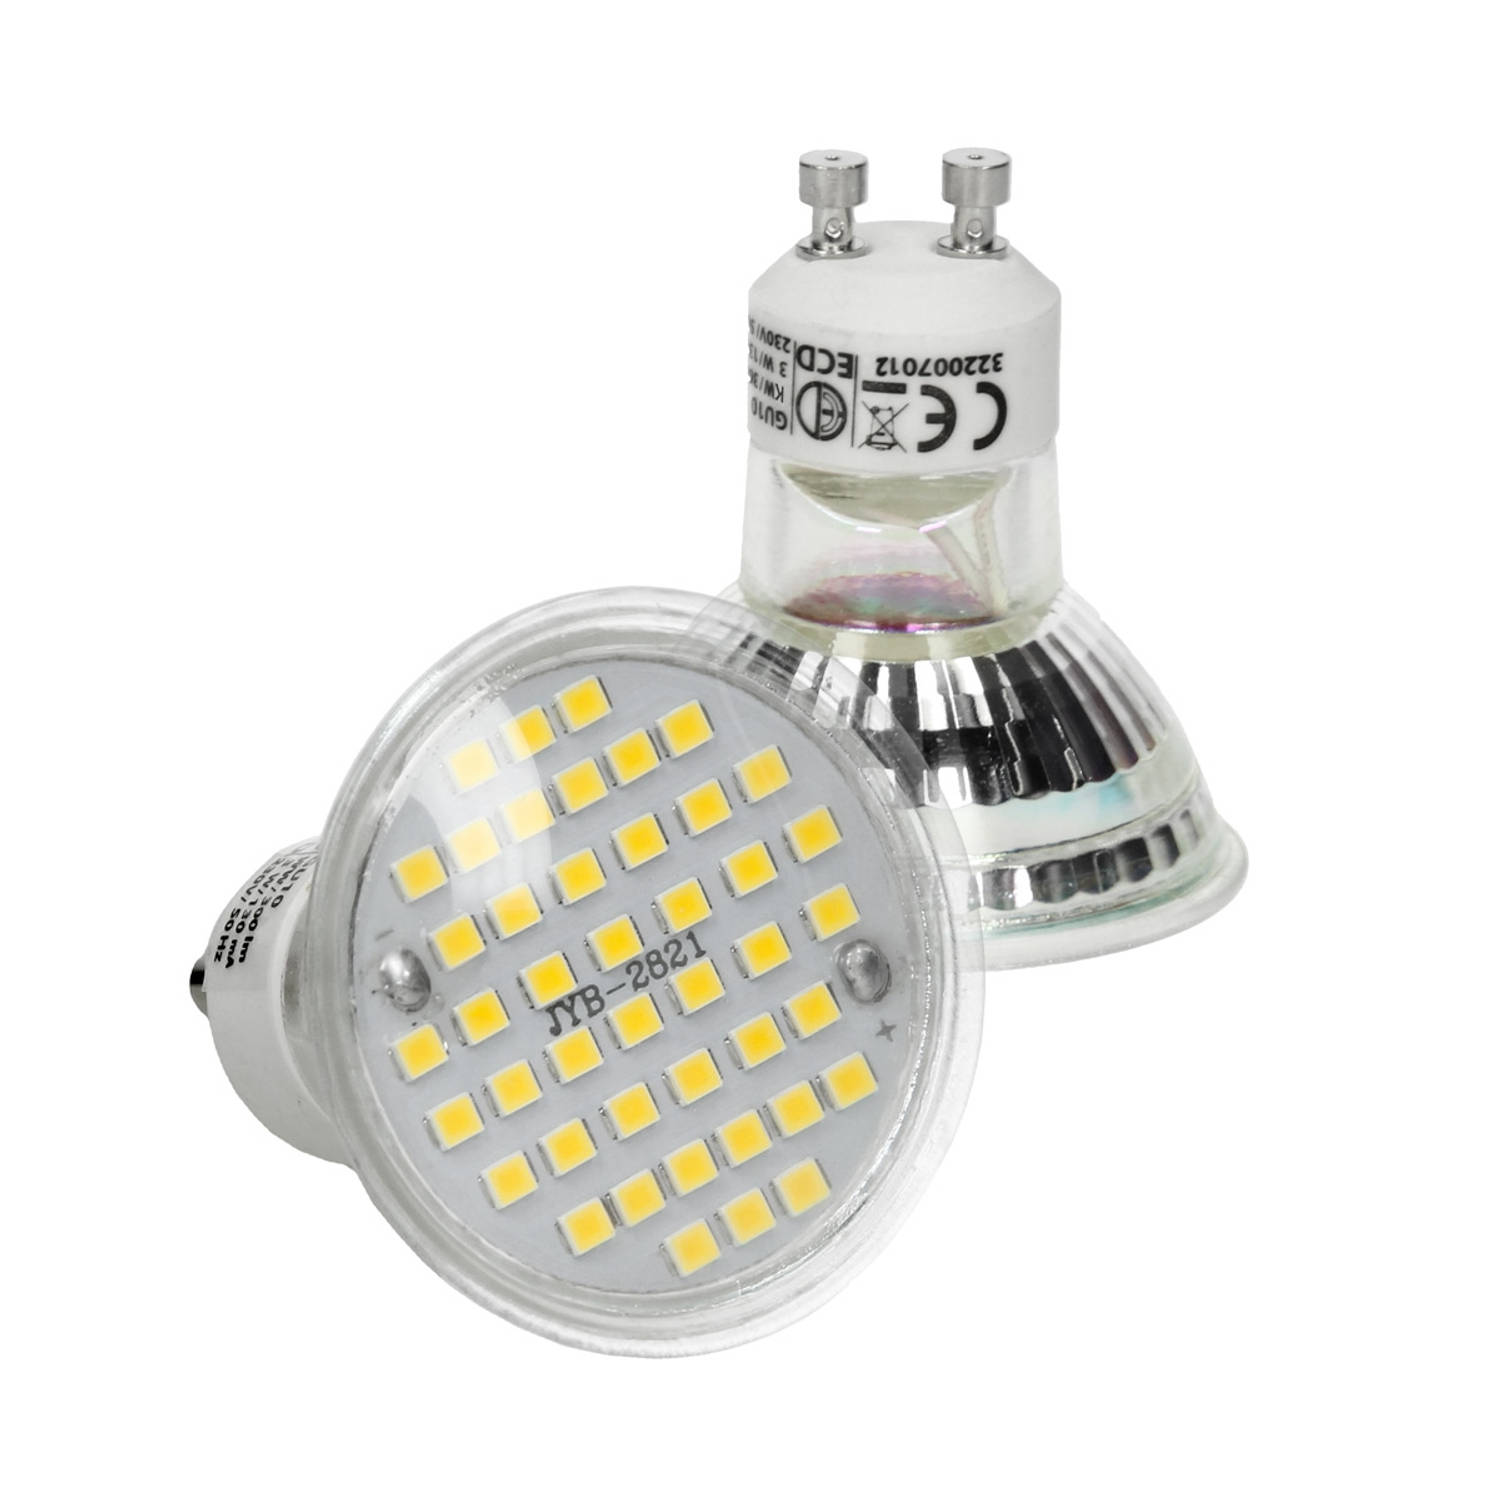 ECD Germany 5er Set LED Lampe Spot GU10 44SMD 3W - vervangt 20W gloeilamp - gemaakt van glas- 251 lumen - koel wit 6000K